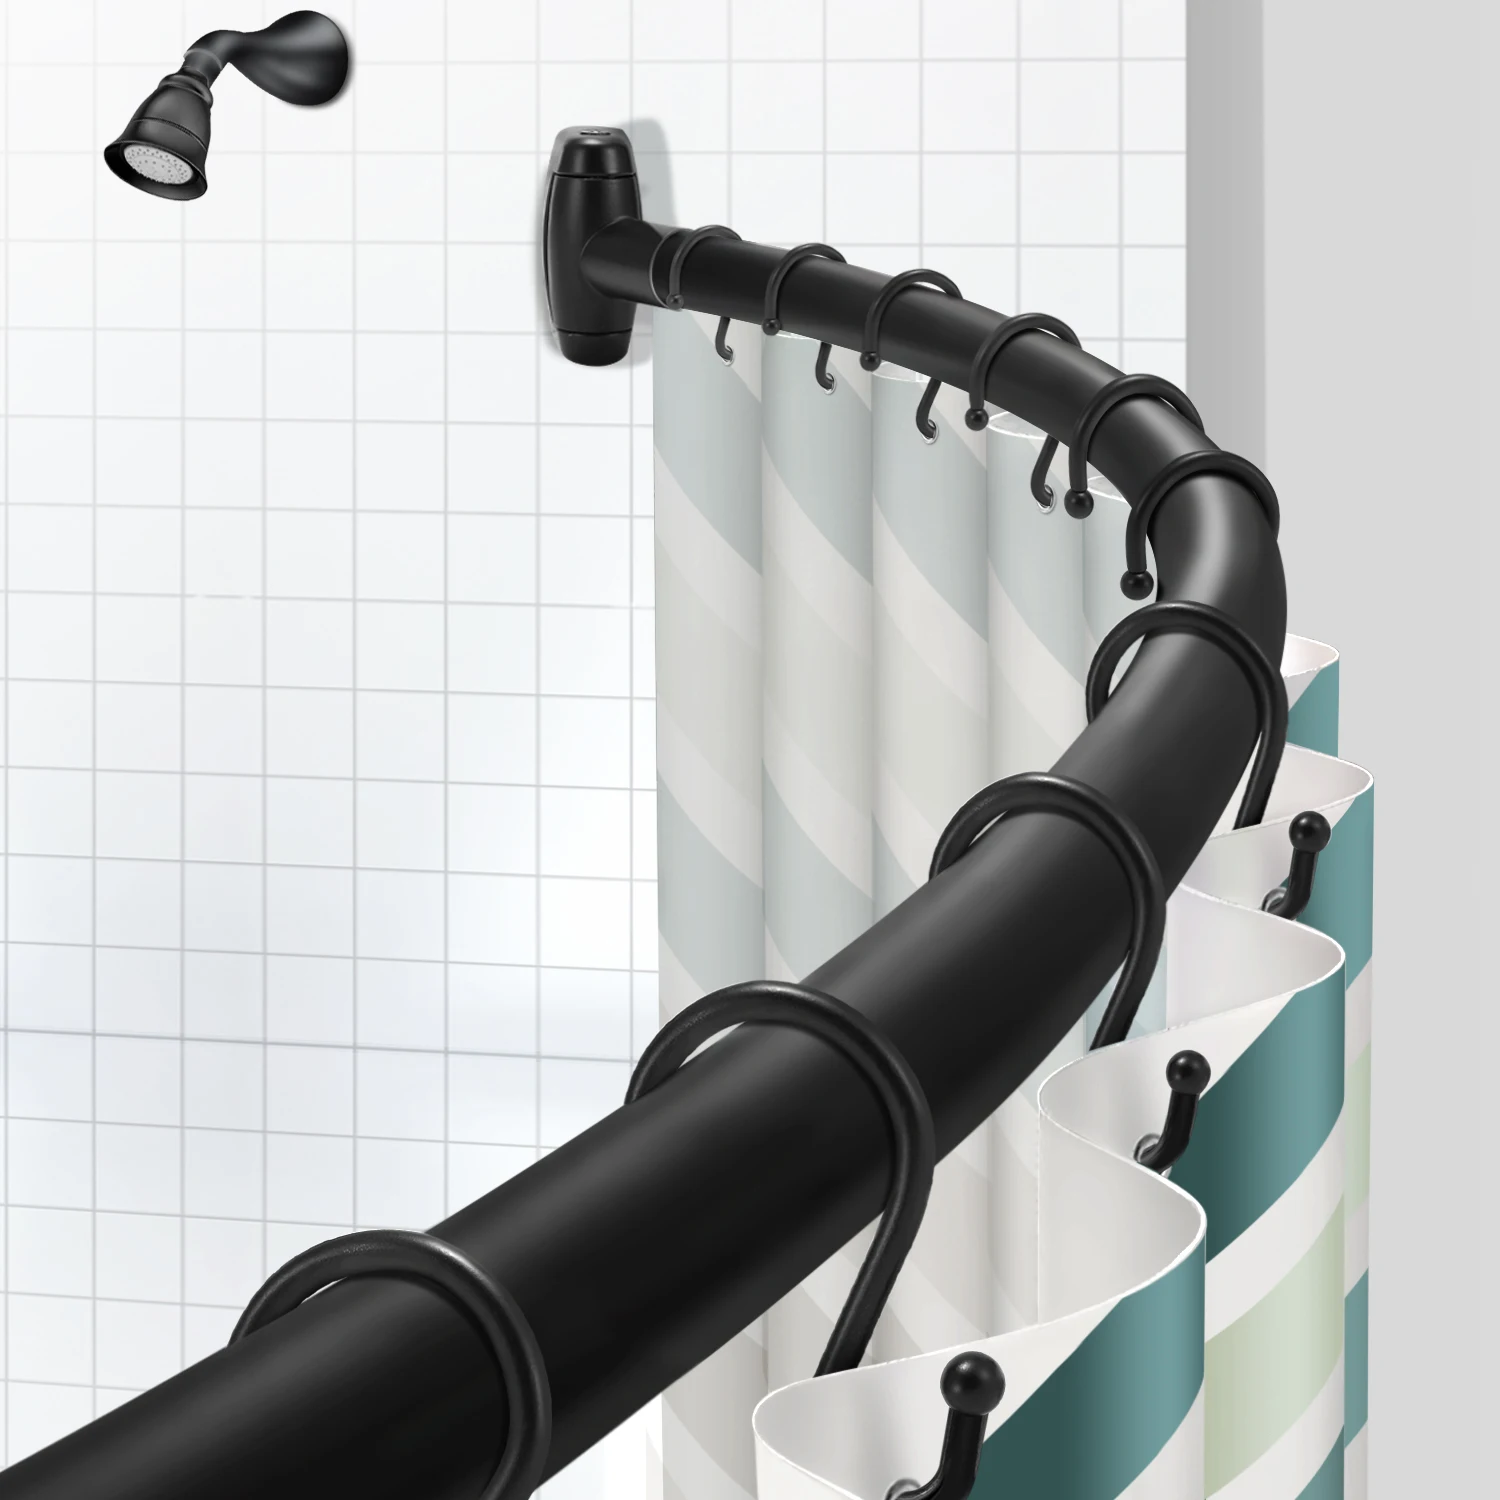 Dòng sản phẩm mới của chúng tôi mang lại giải pháp cho phòng tắm của bạn, thanh treo rèm nhà tắm màu đen cong - một sản phẩm độc đáo và sang trọng. Với kiểu dáng độc đáo, thanh treo rèm giúp cho bạn tận dụng tối đa không gian và tạo cảm giác phòng tắm rộng rãi hơn.